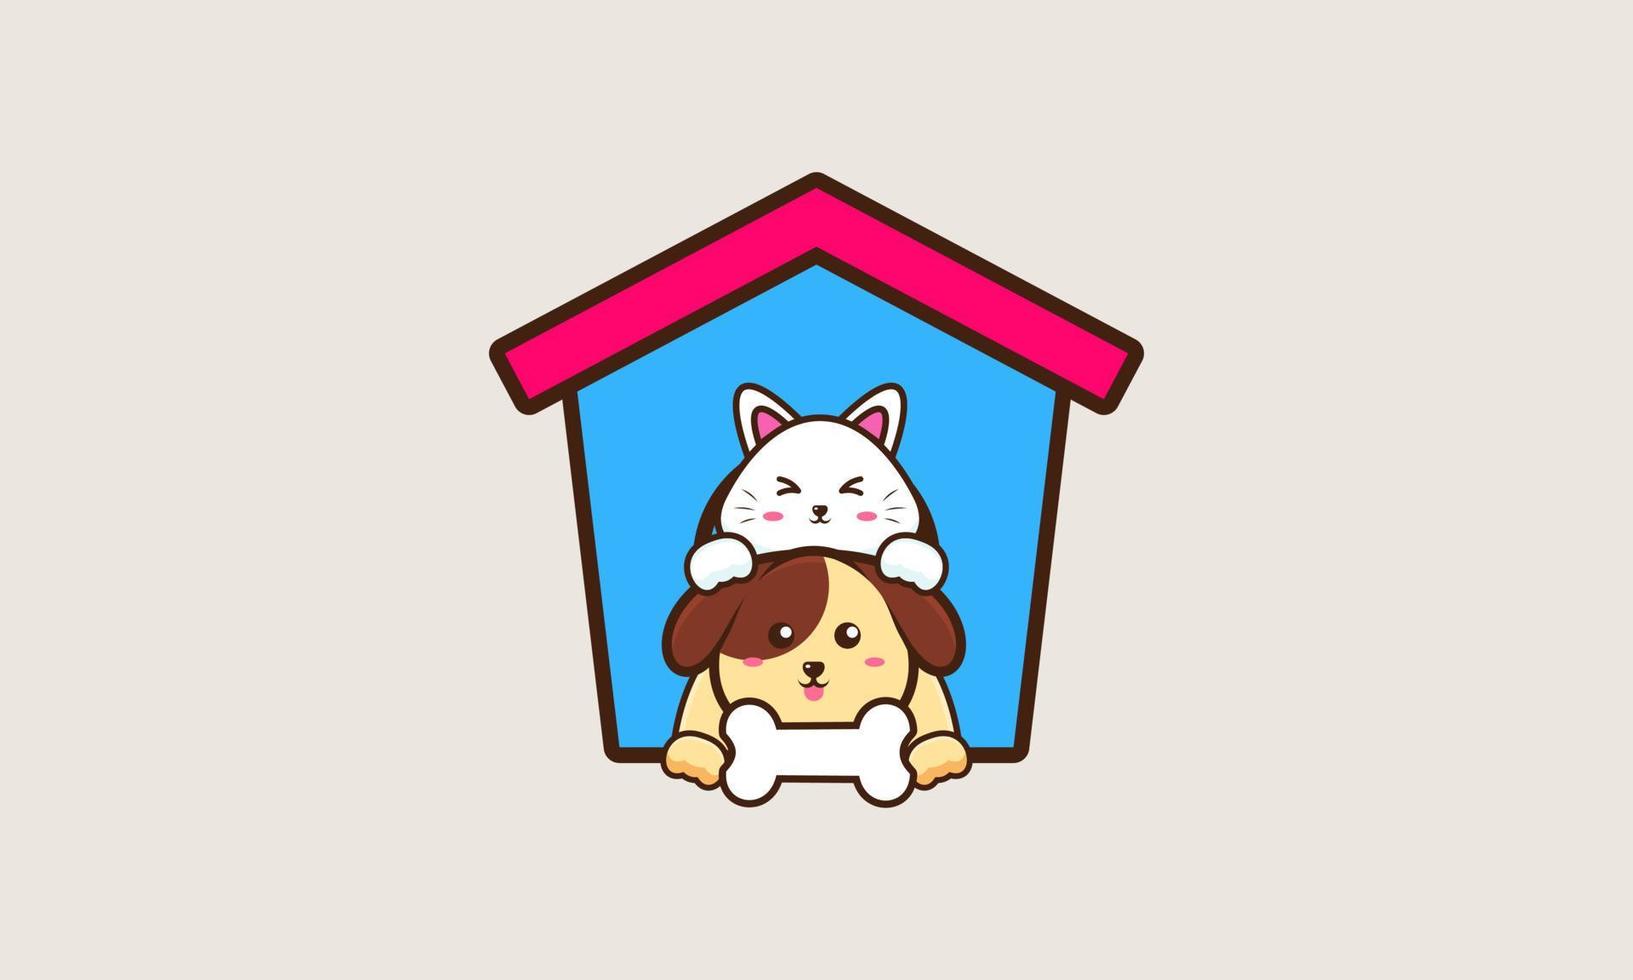 simpatico gatto e cane amico fumetto illustrazione vettoriale. concetto di icona animale amico vettore